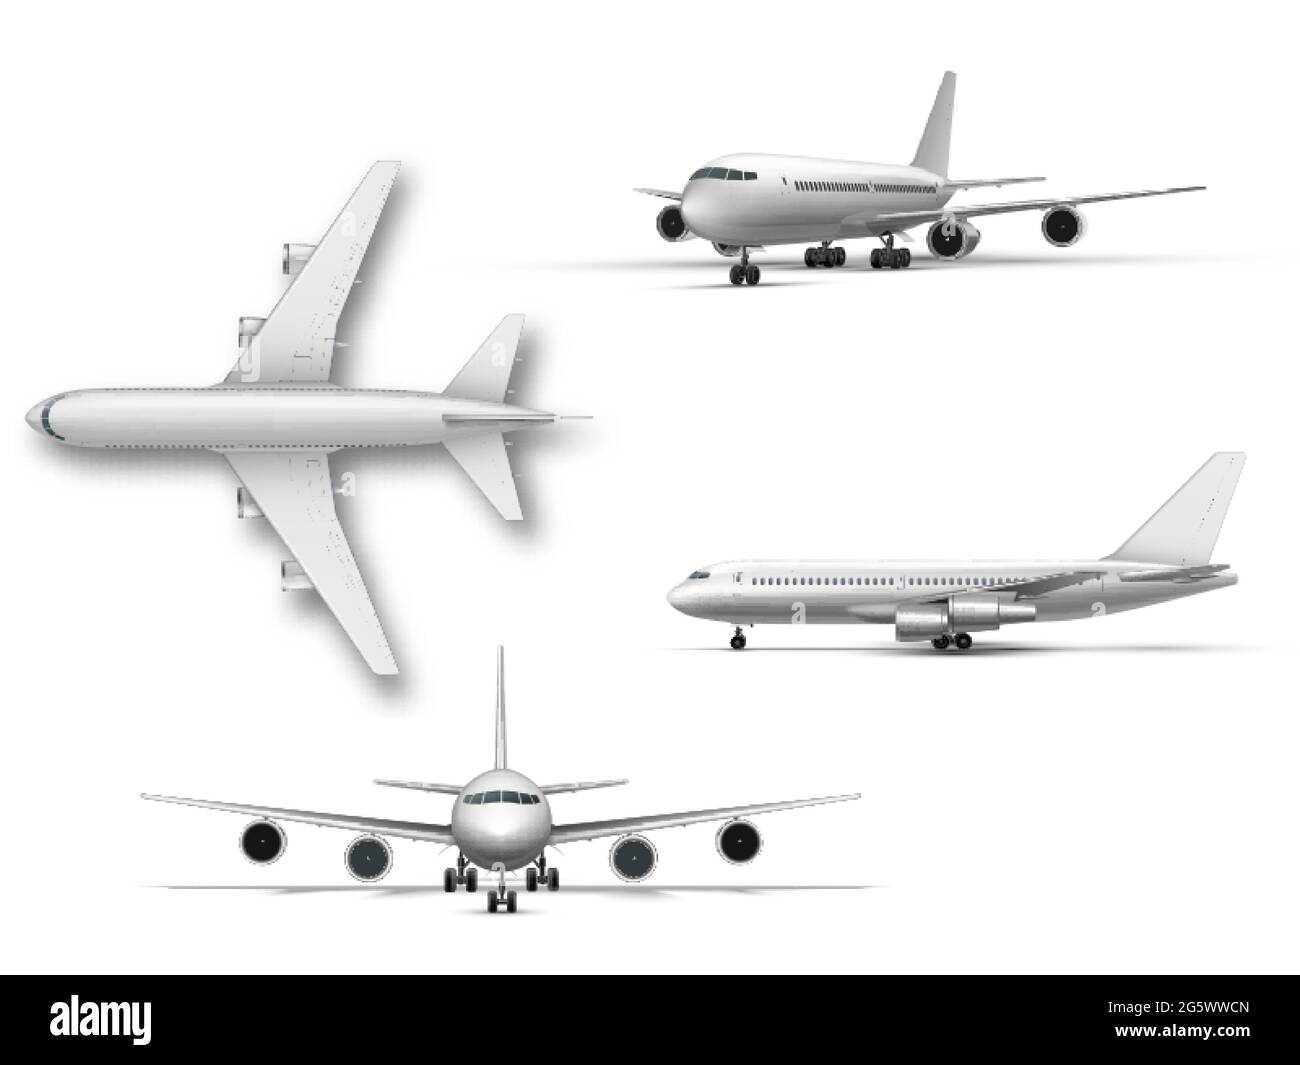 Standflugzeug, Düsenflugzeug, Verkehrsflugzeug. Detailliertes Passagierflugzeug auf weißem Hintergrund. Stock Vektor